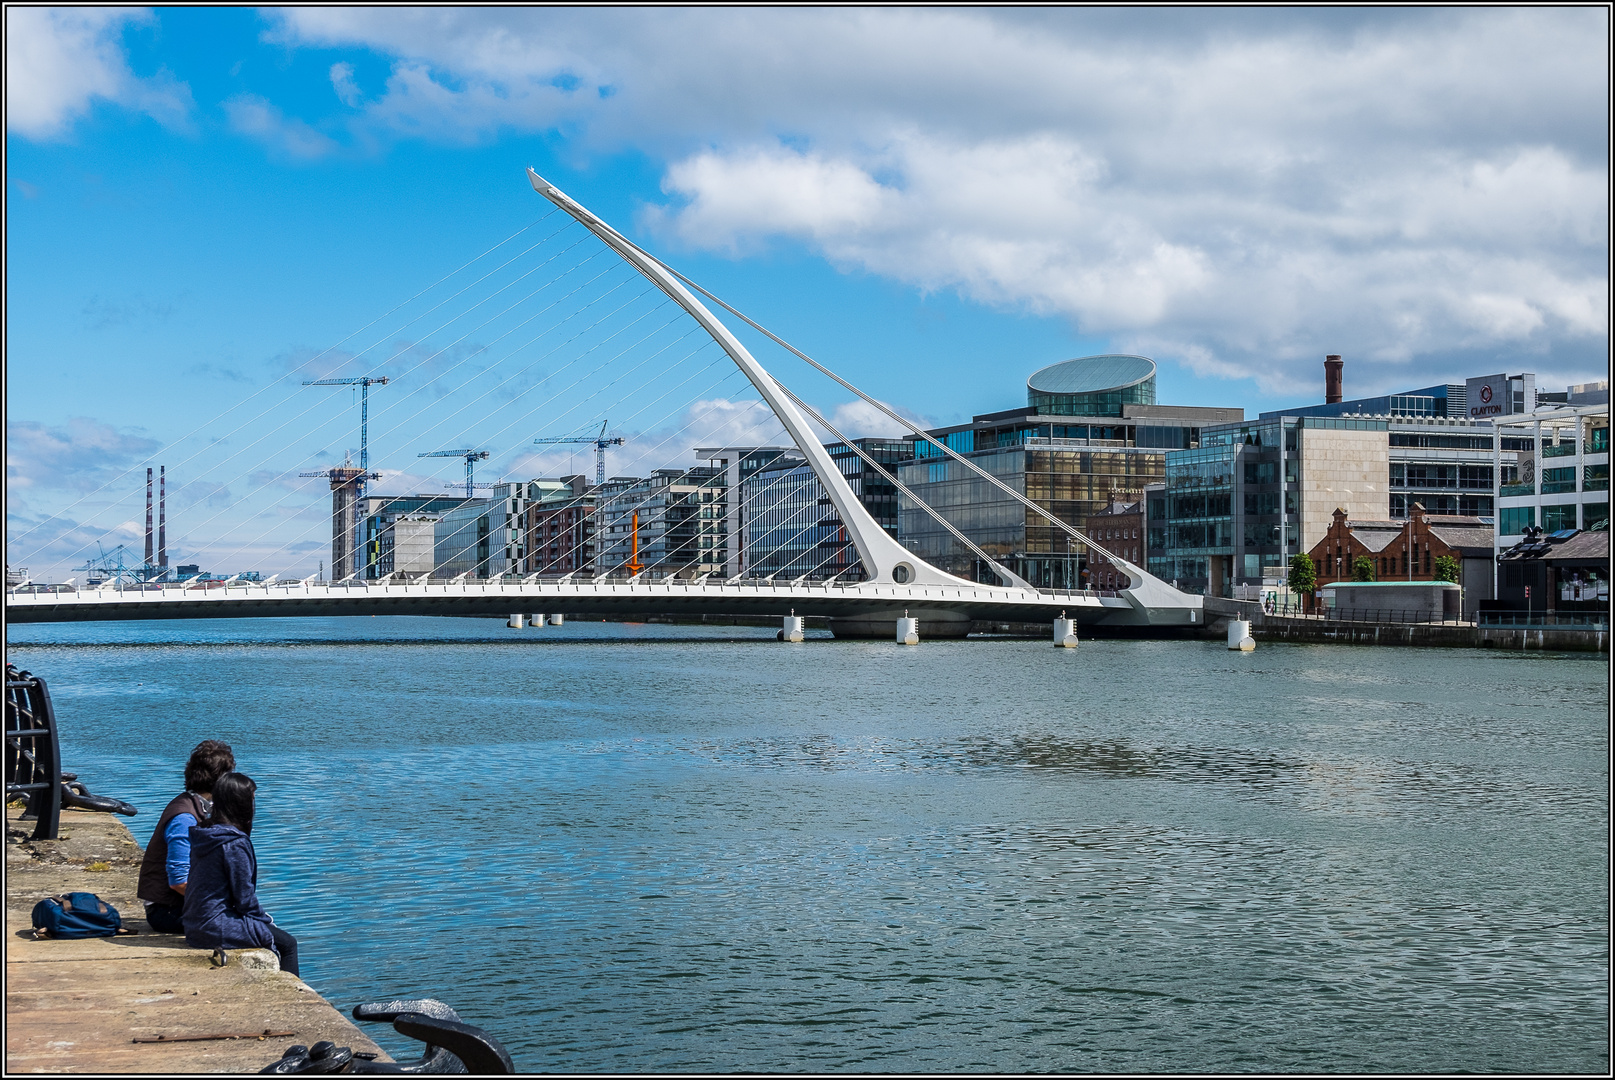 Dublin Samuel Beckett Bridge